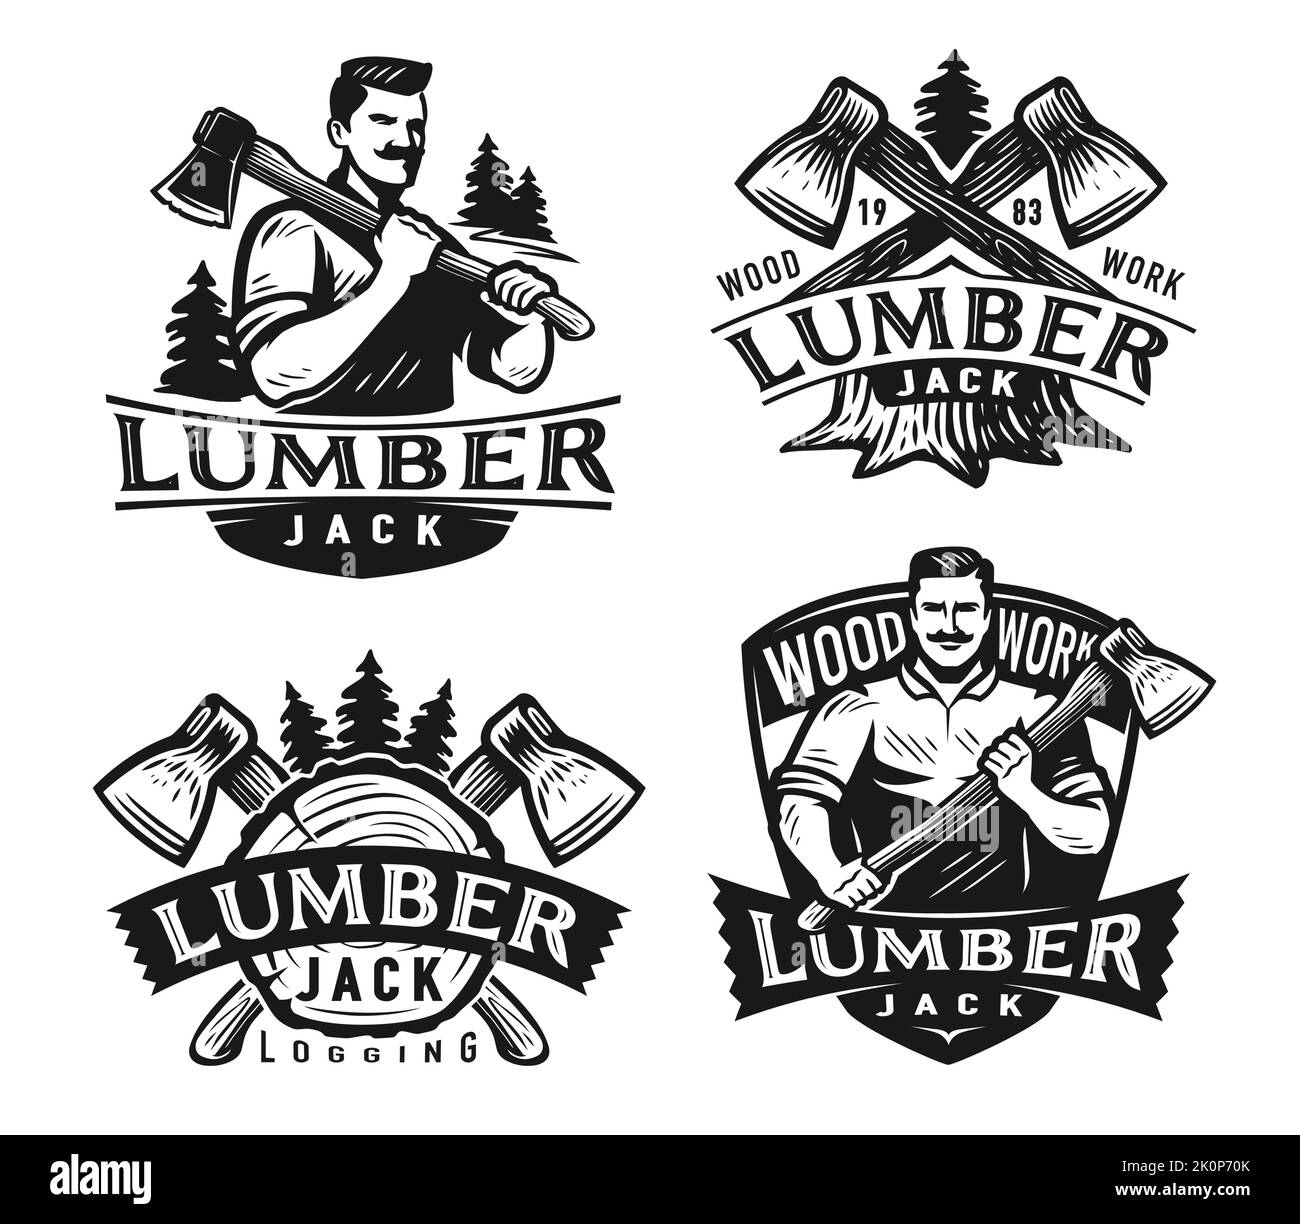 Holzfällerabzeichen-Set. Holzarbeiten, Holzfällerbäume Emblem. Monochrom-Etiketten für die Holzindustrie. Vektordarstellung isoliert Stock Vektor